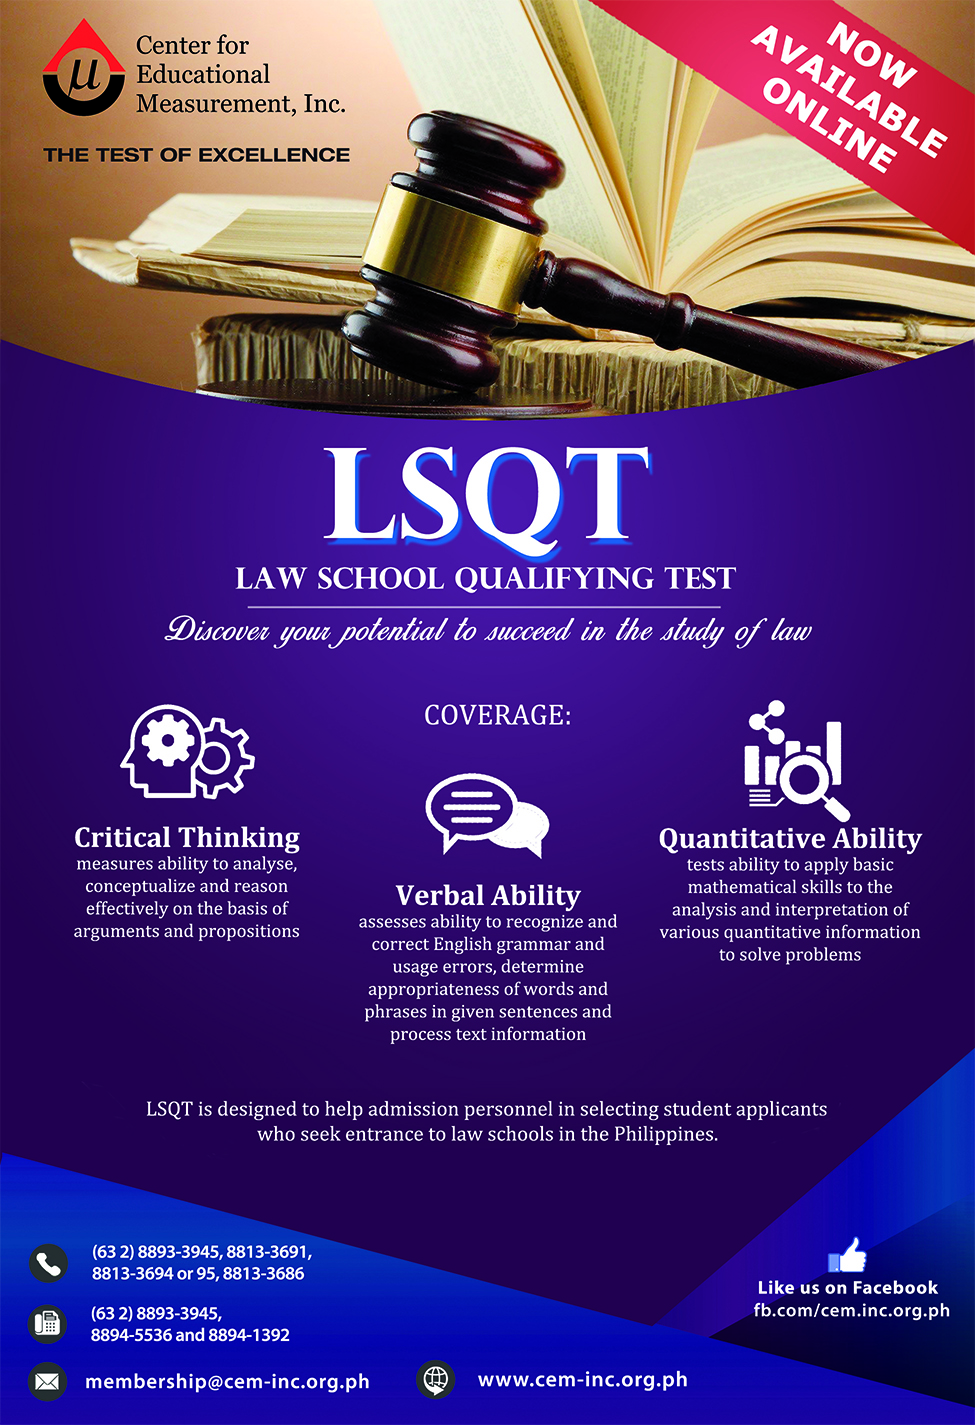 Law School Qualifying Test (LSQT)